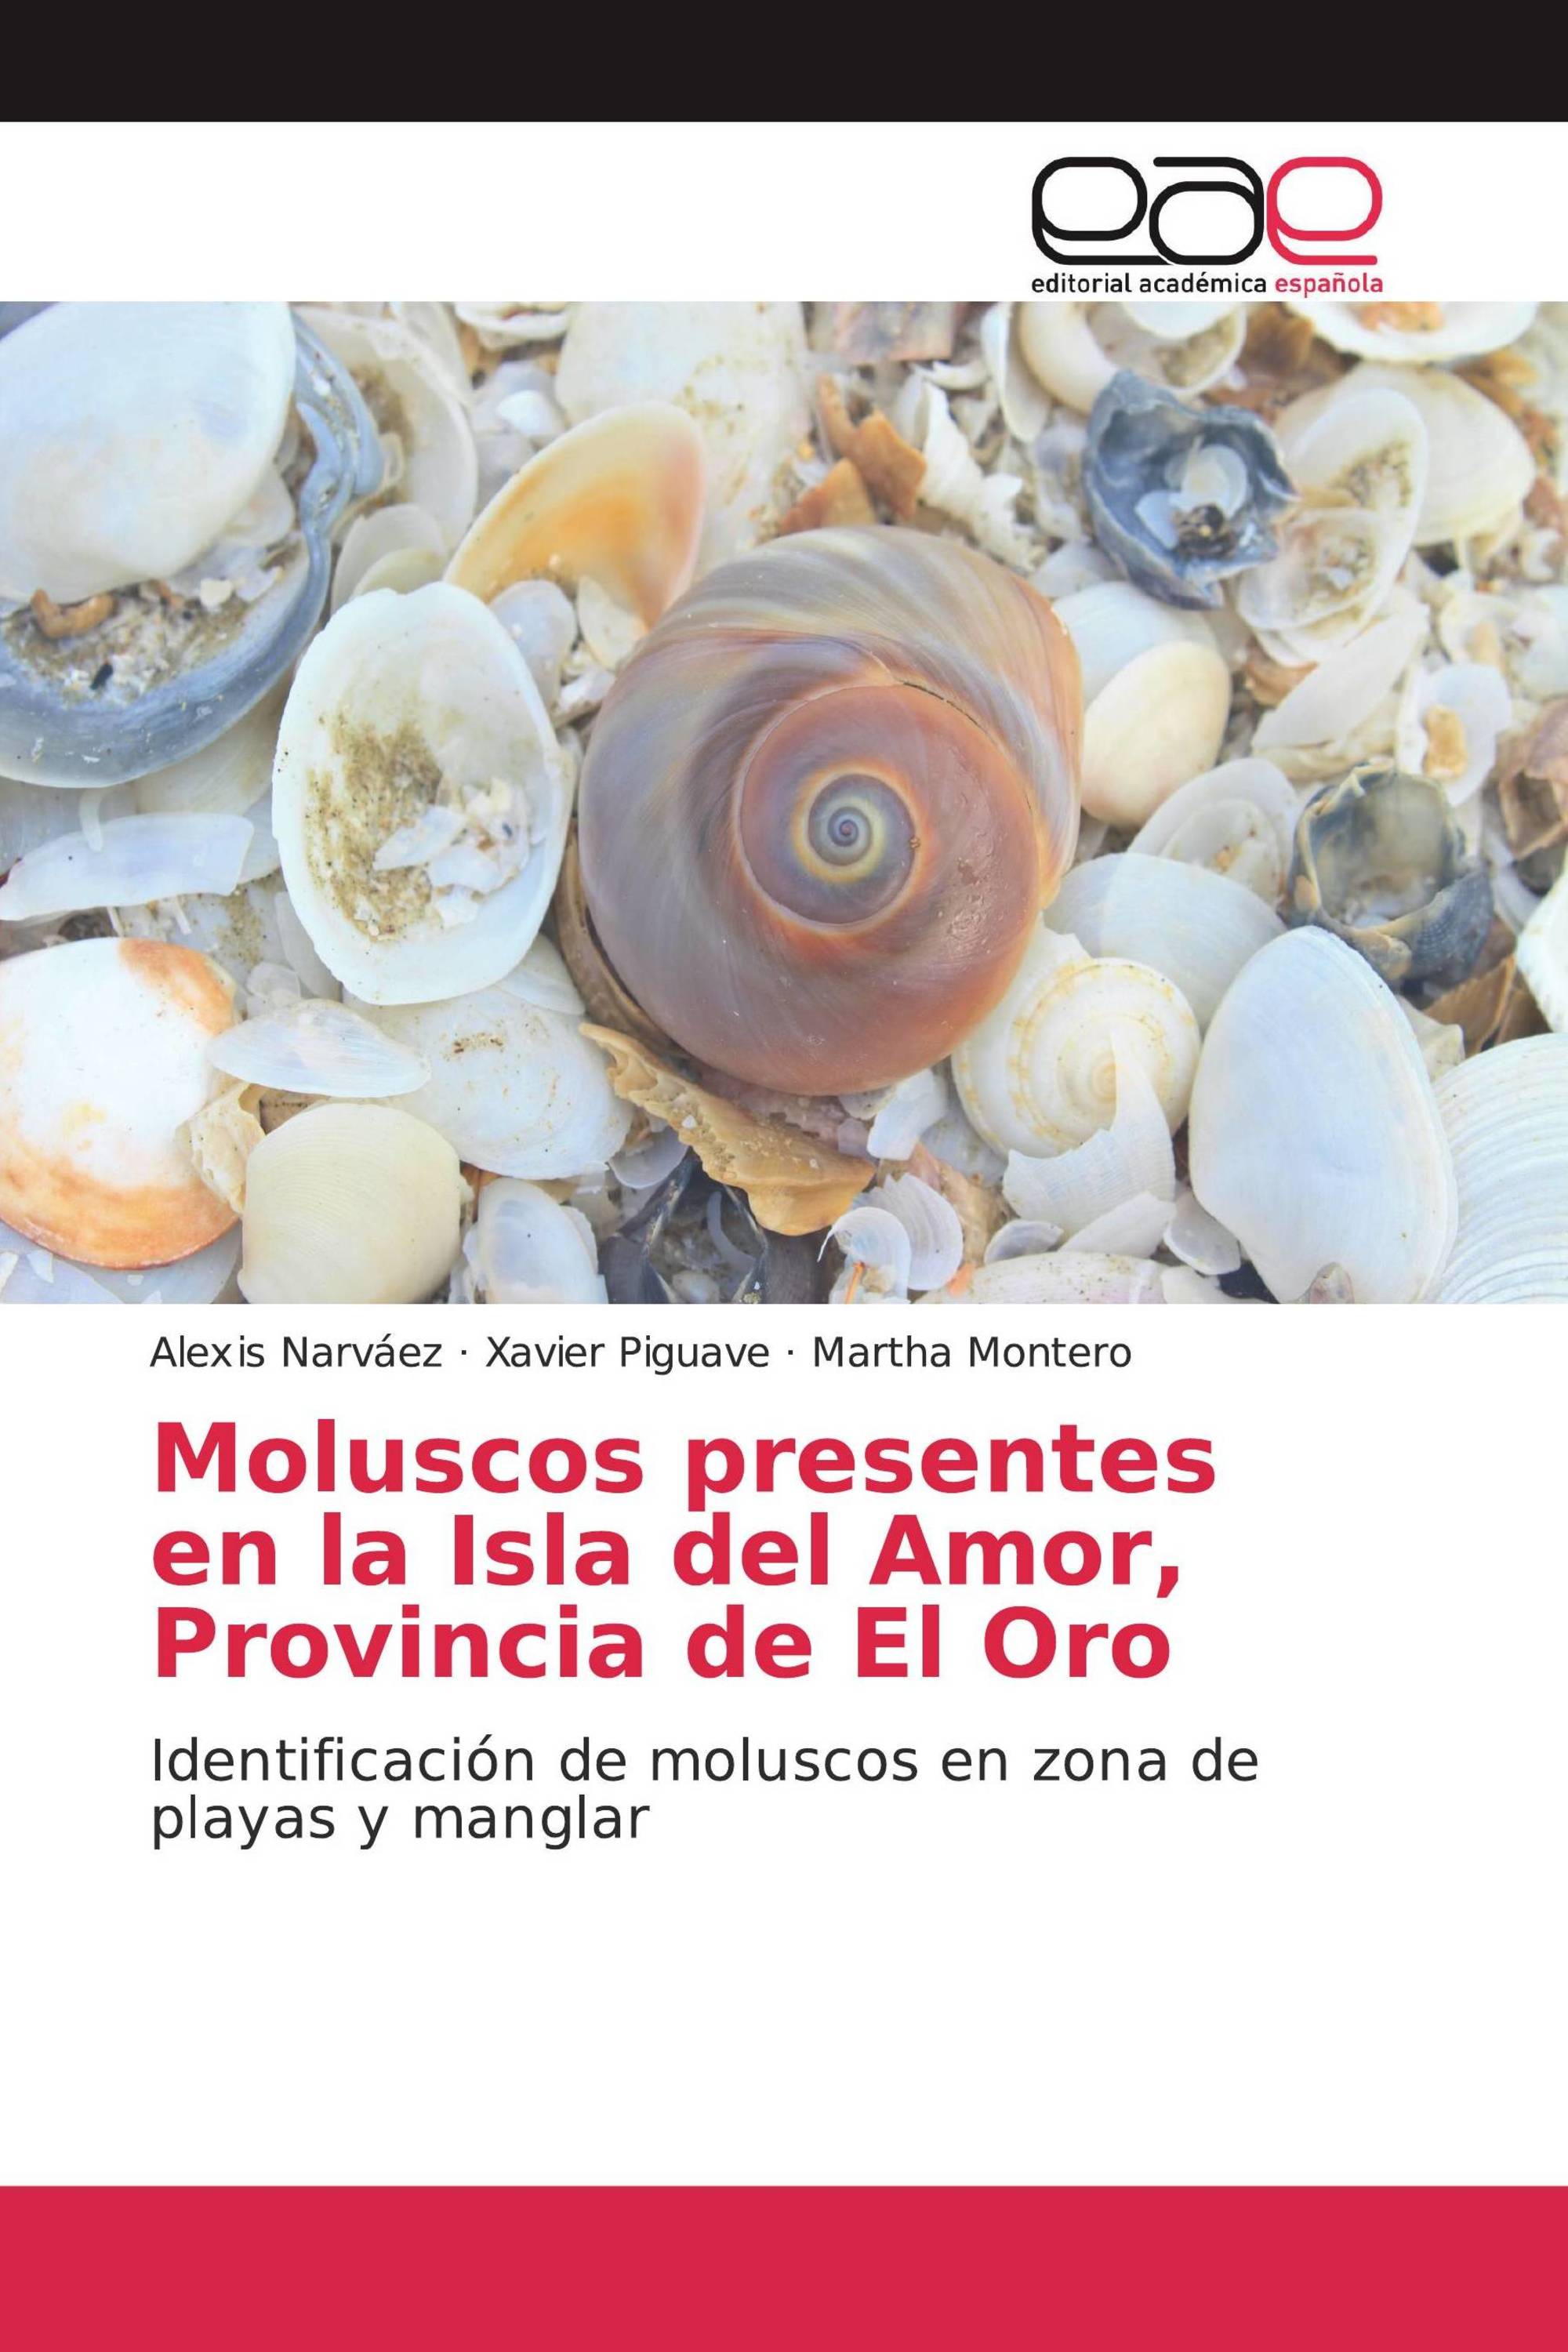 Moluscos presentes en la Isla del Amor, Provincia de El Oro